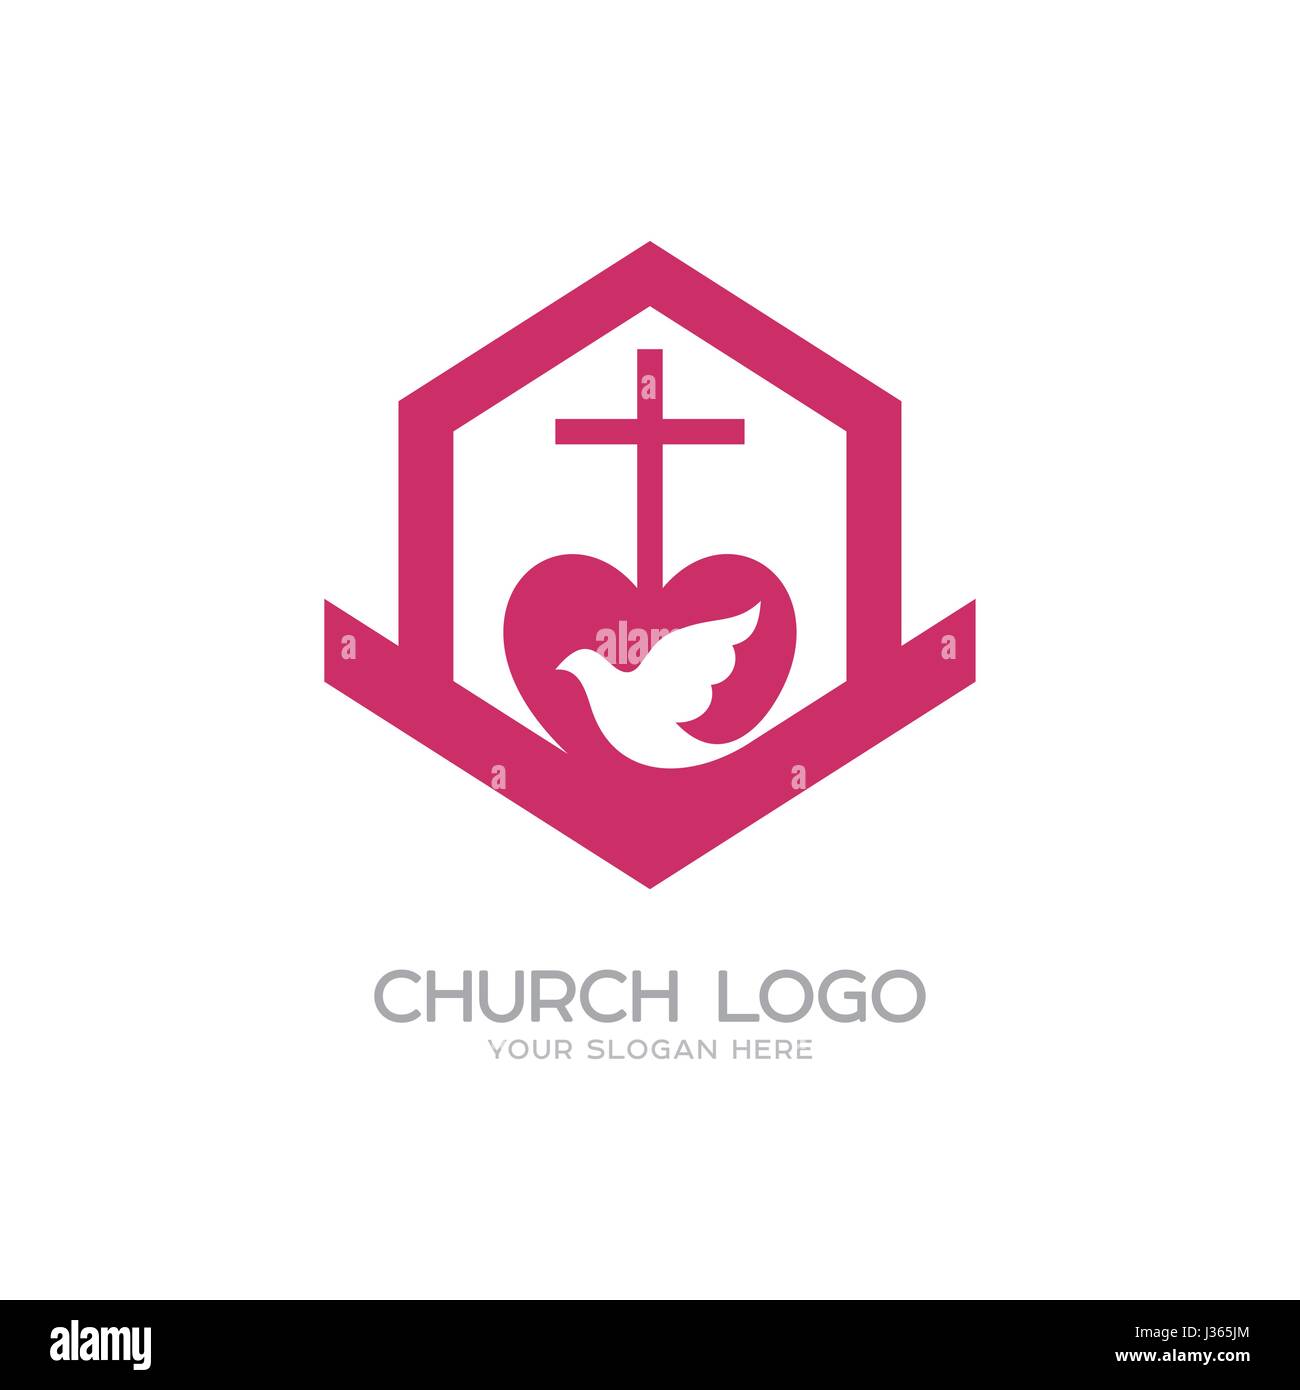 Logo der Kirche. Christliche Symbole. Das Kreuz des Herrn und Erlöser Jesus Christus, das Gebäude der Kirche, der Heilige Geist ist eine Taube. Stock Vektor